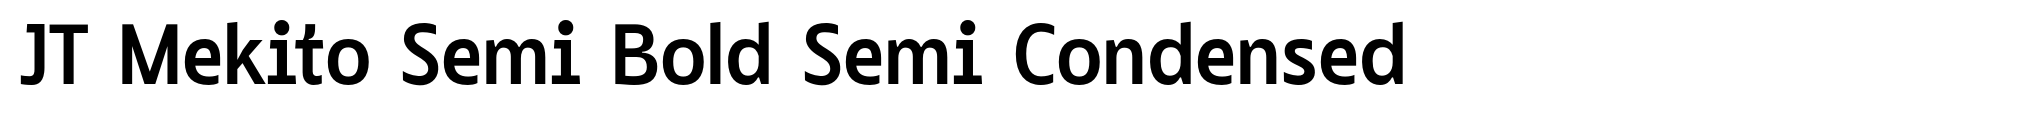 JT Mekito Semi Bold Semi Condensed image